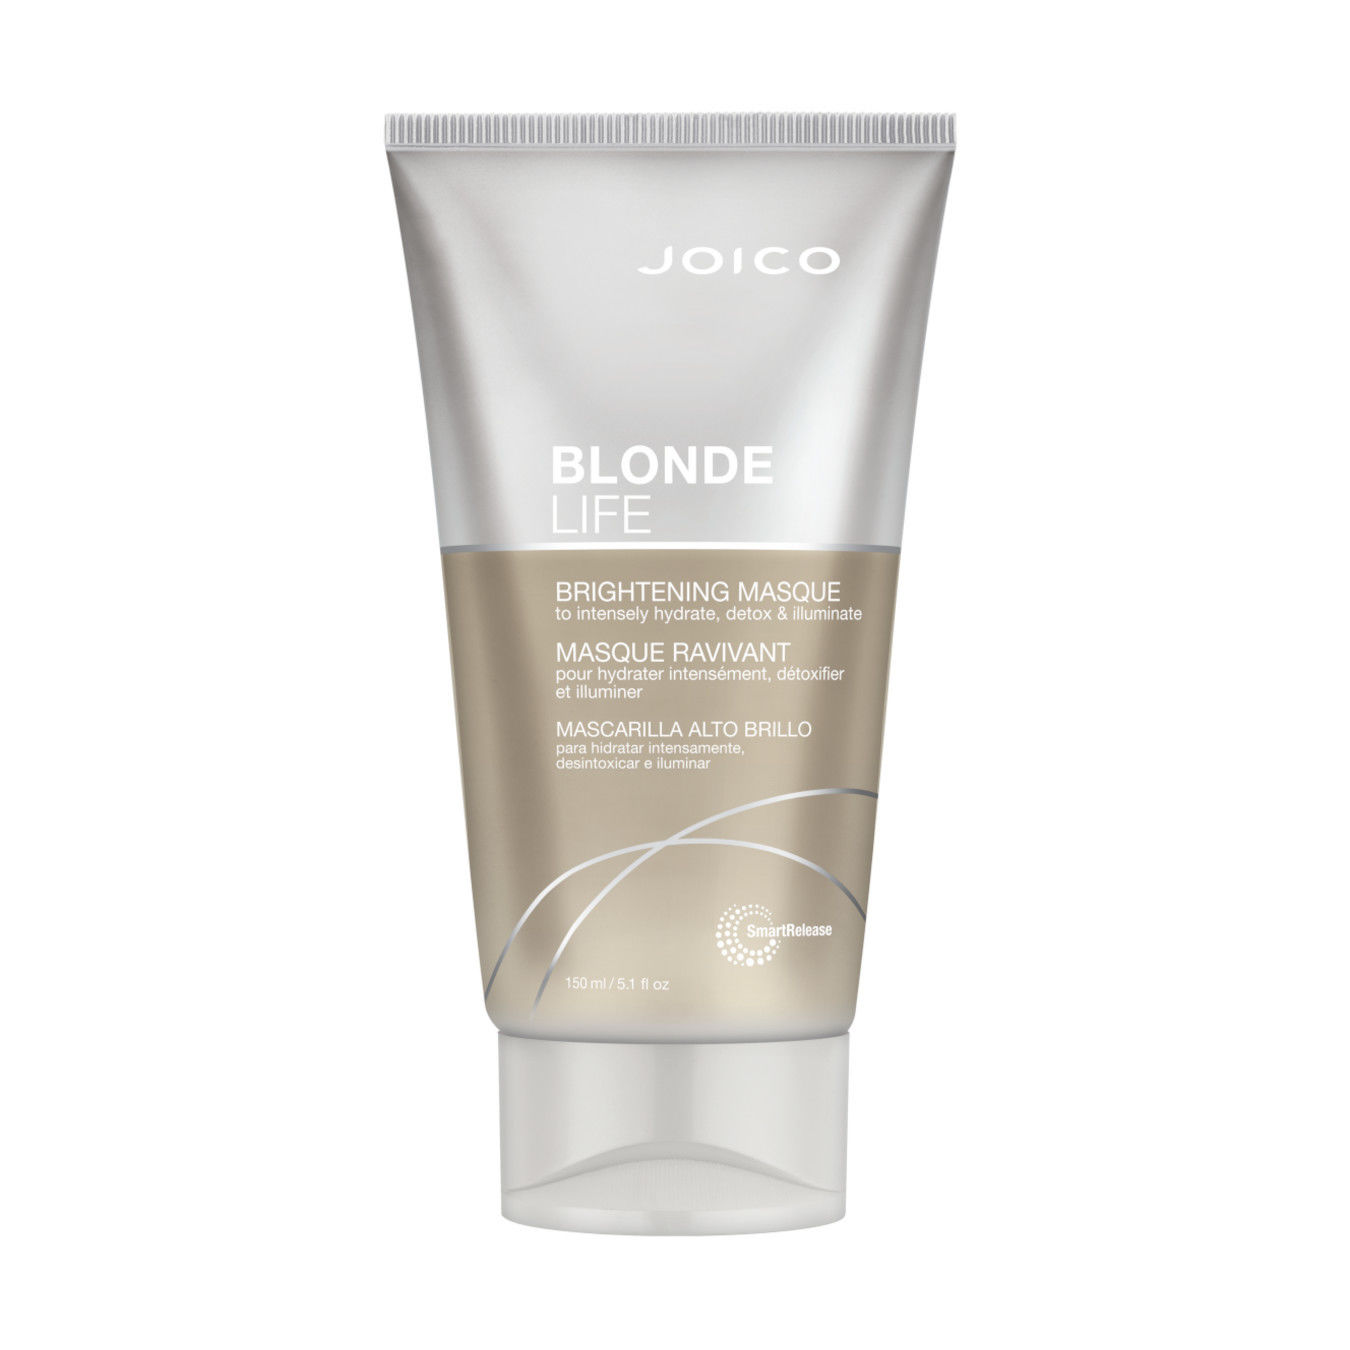 JOICO Blonde Life Brightening Masque von Joico